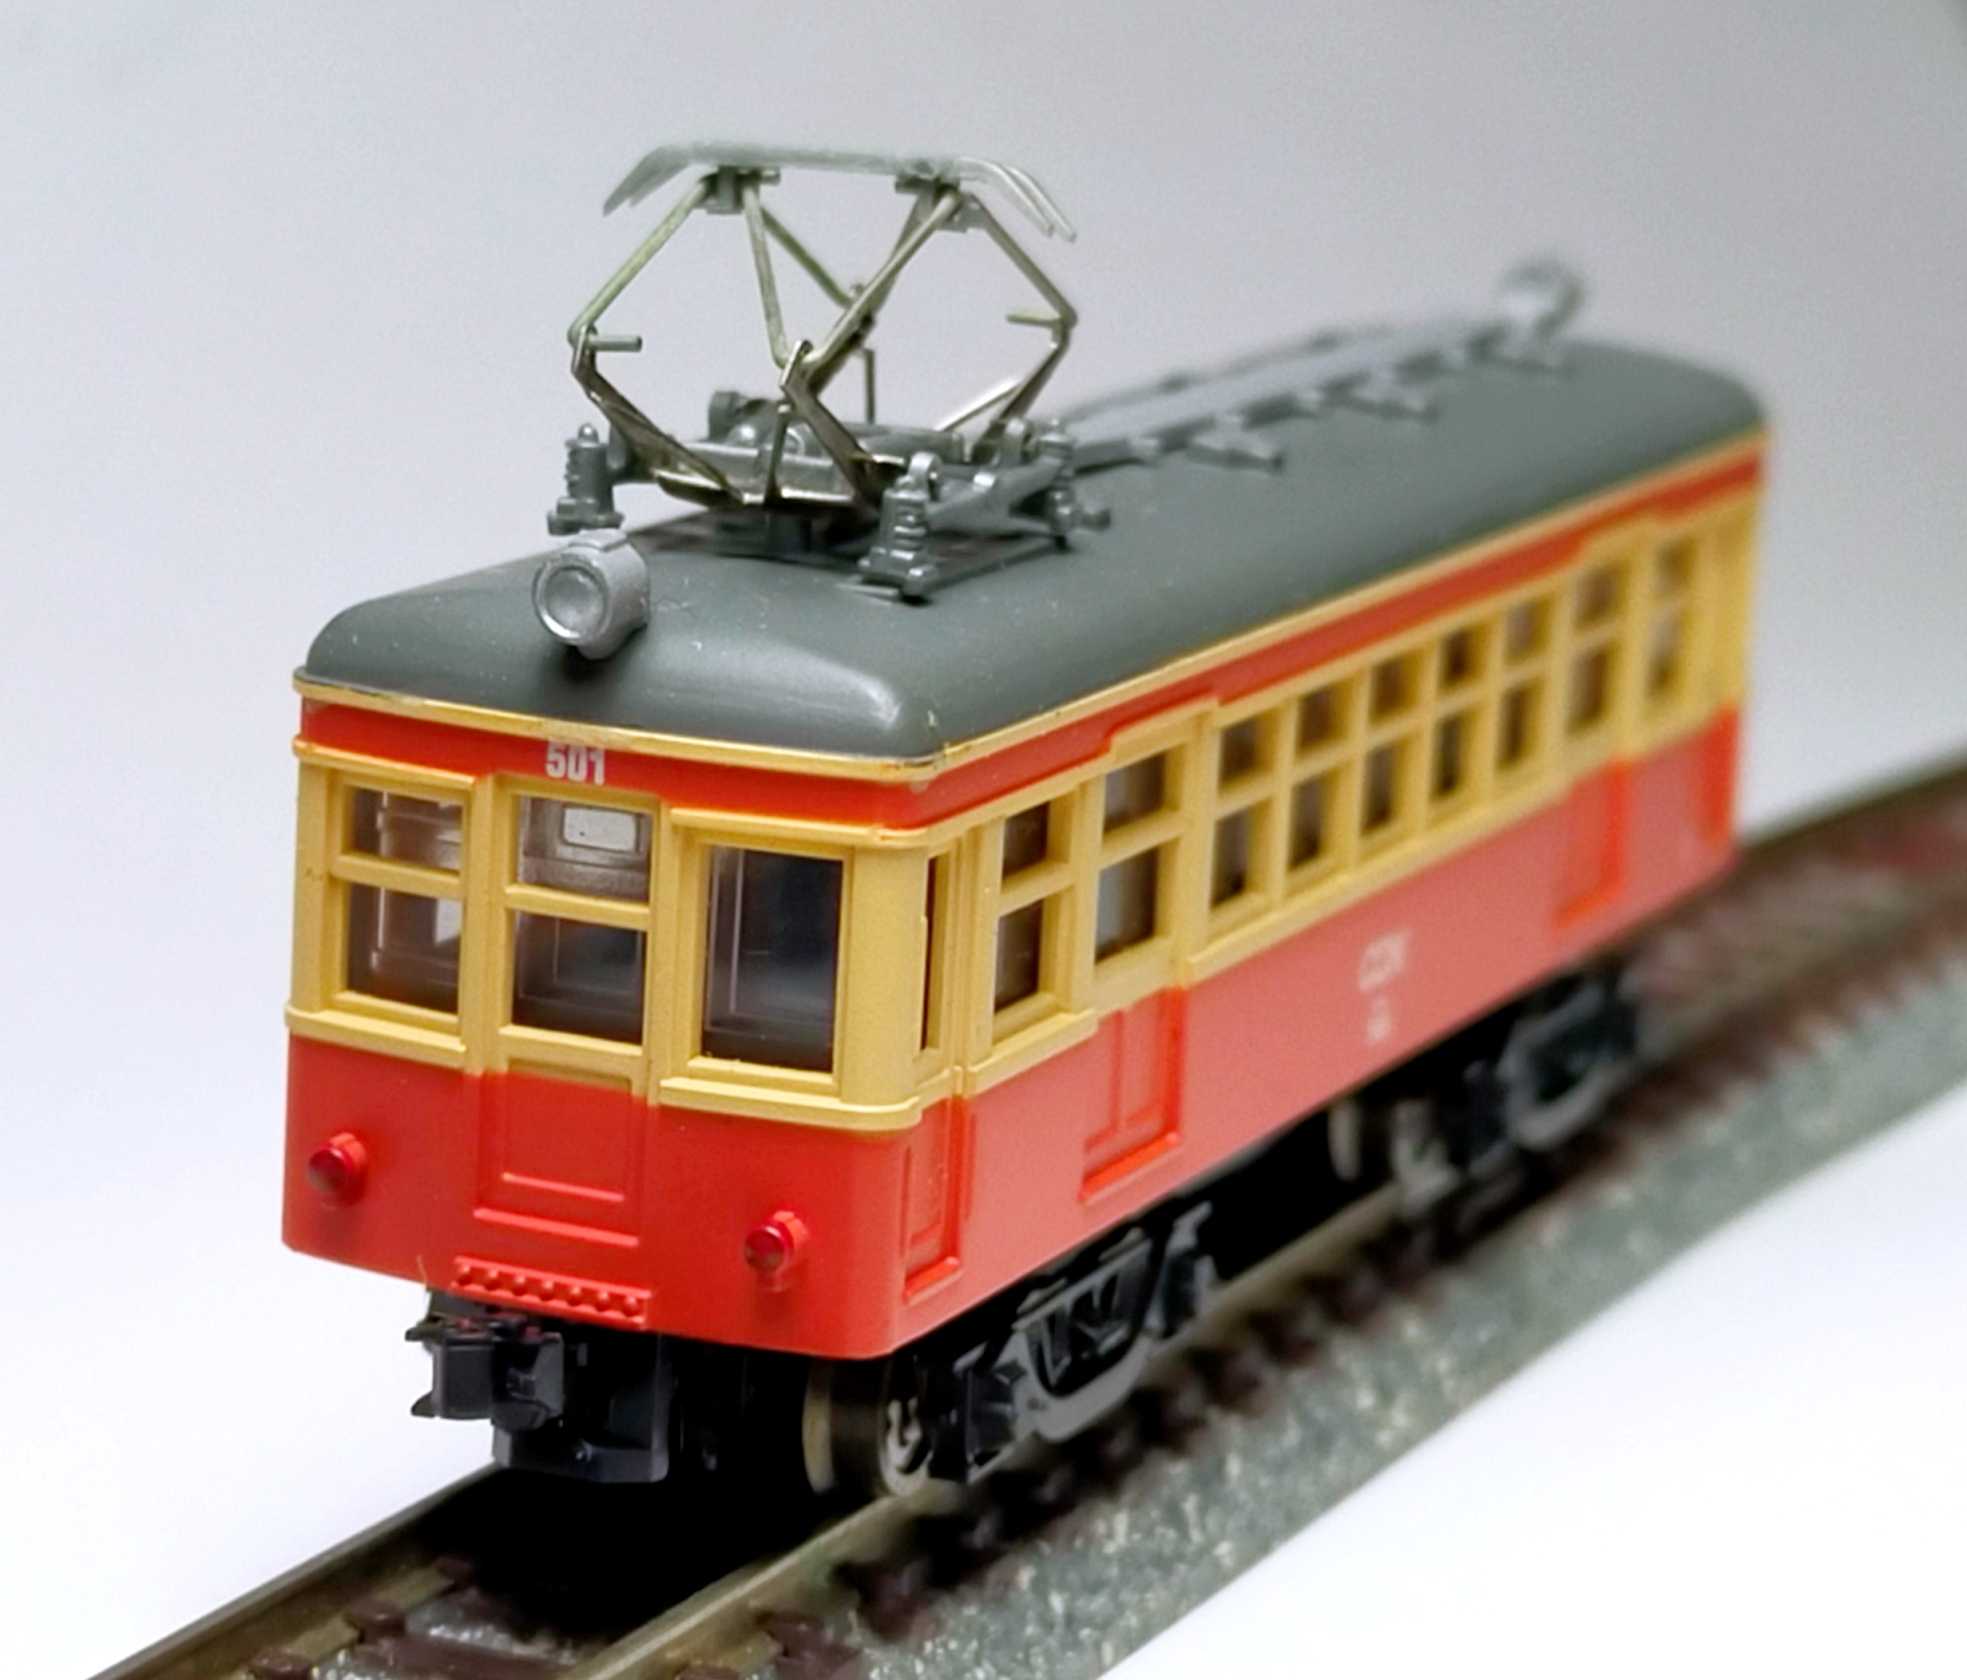 【割引半額】2009 日本鉄道模型連合会 銚子電鉄 デハ501型 完成品 私鉄電車